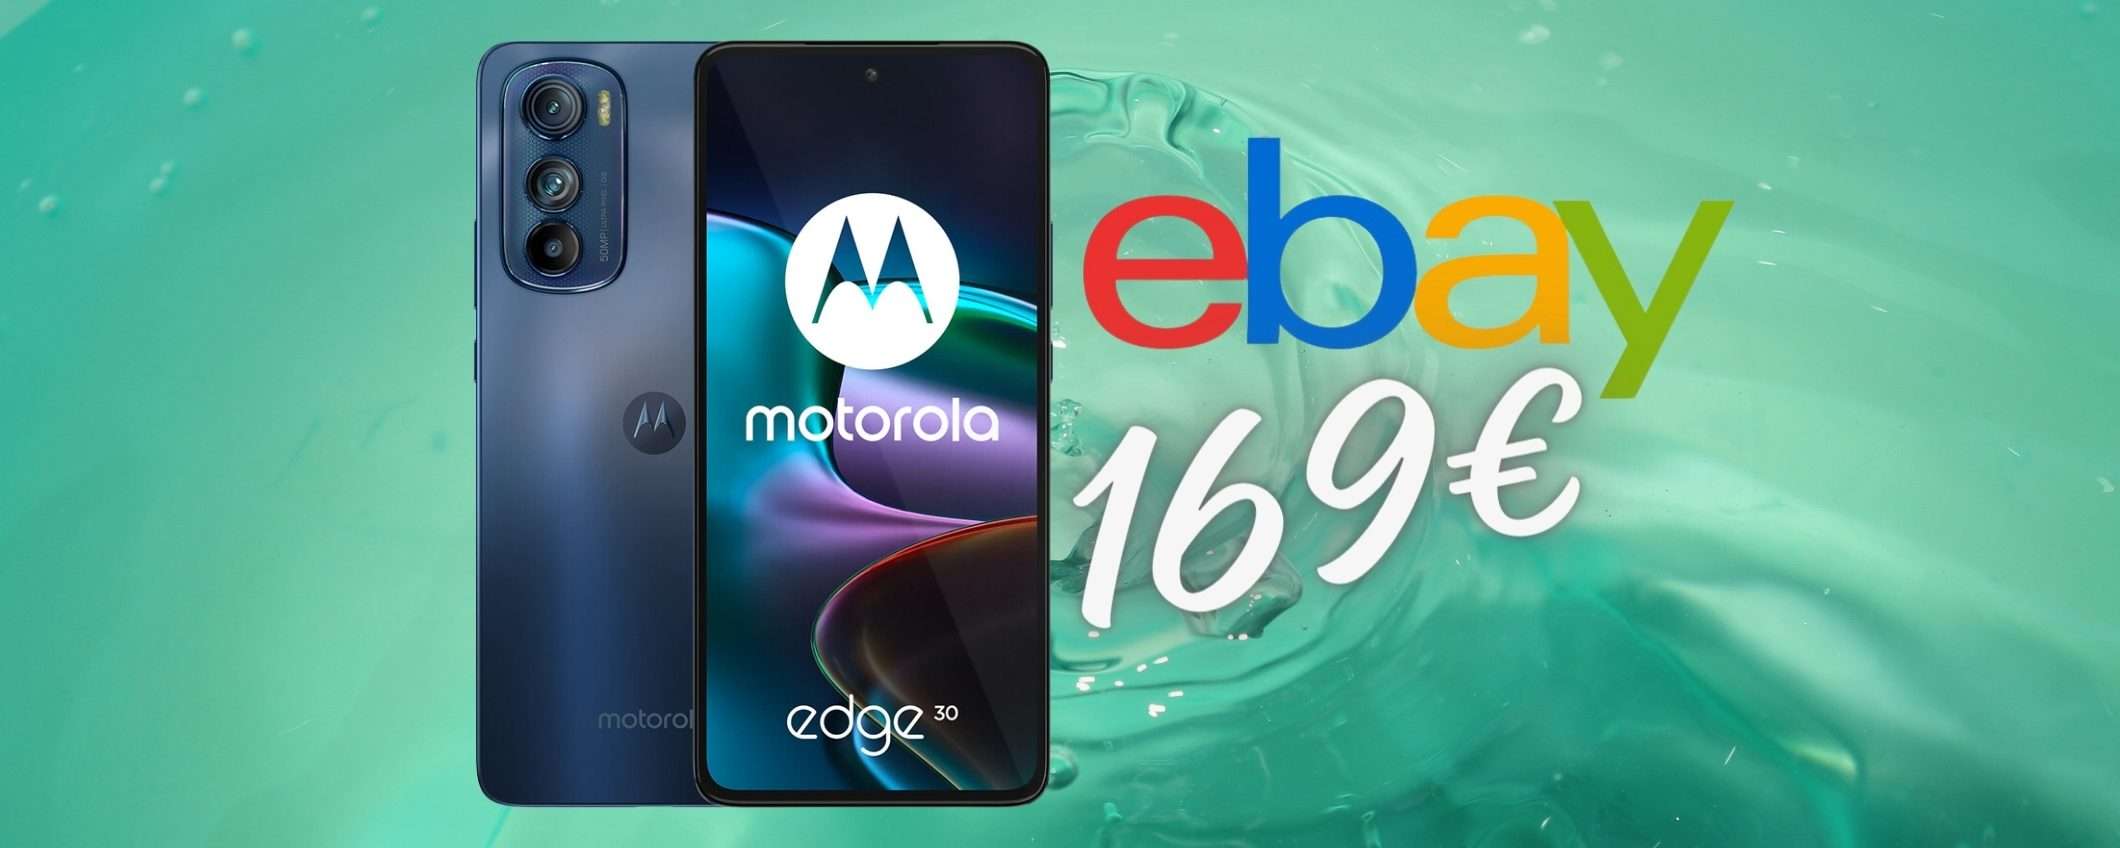 Smartphone economico e performante? Motorola Edge 30 5G a 169€